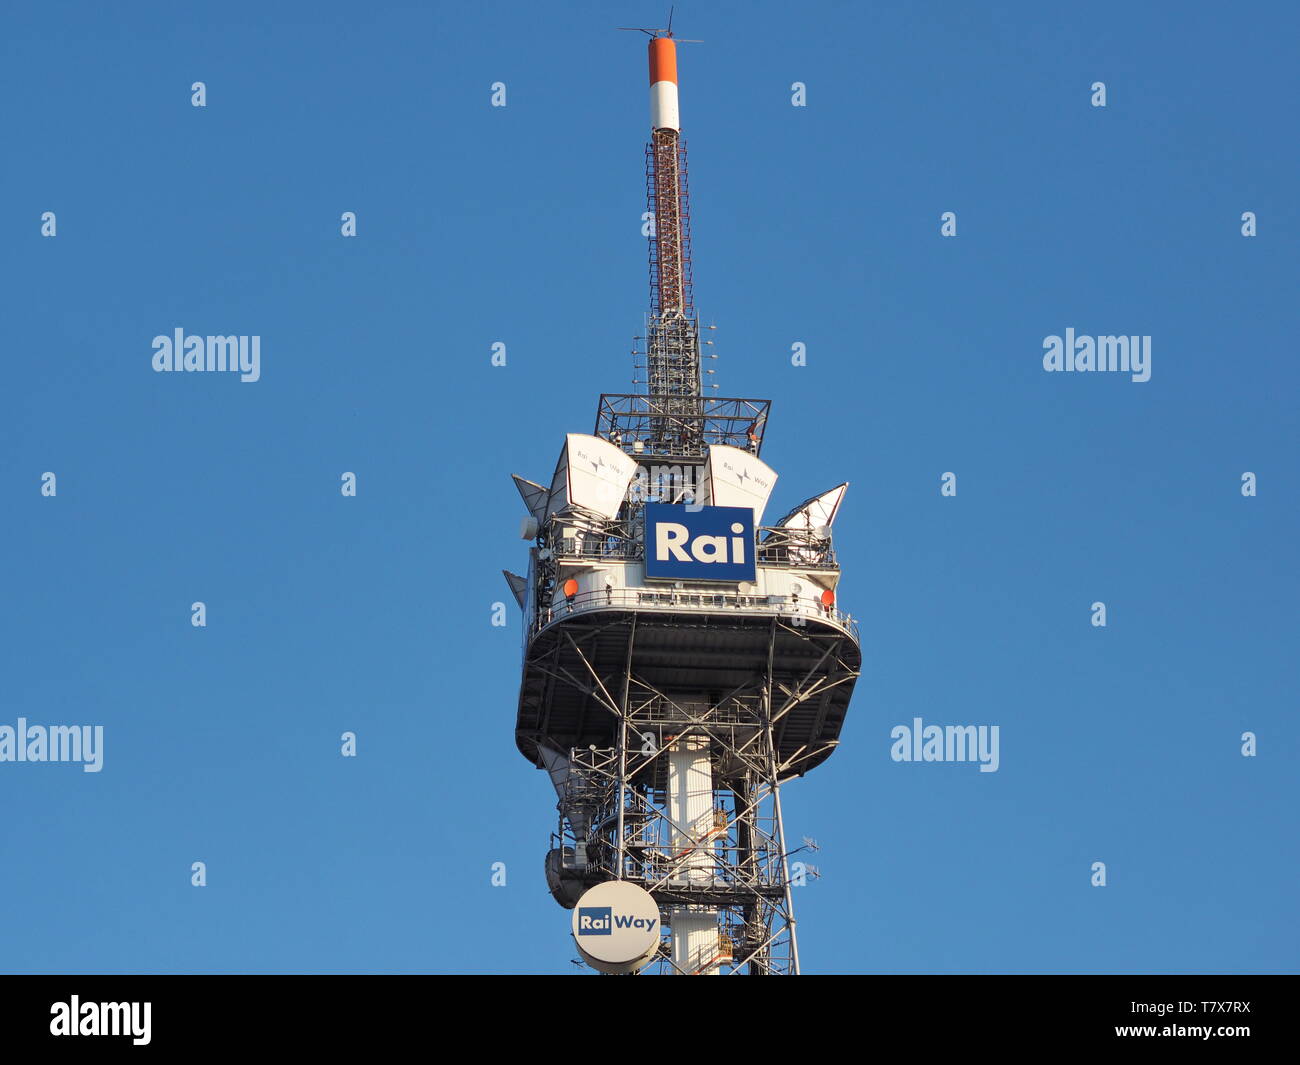 Mailand, 24. mars 2019: Die grosse Antenne Radio Fernsehen italienisch. Mailand, Lombardei. Stockfoto